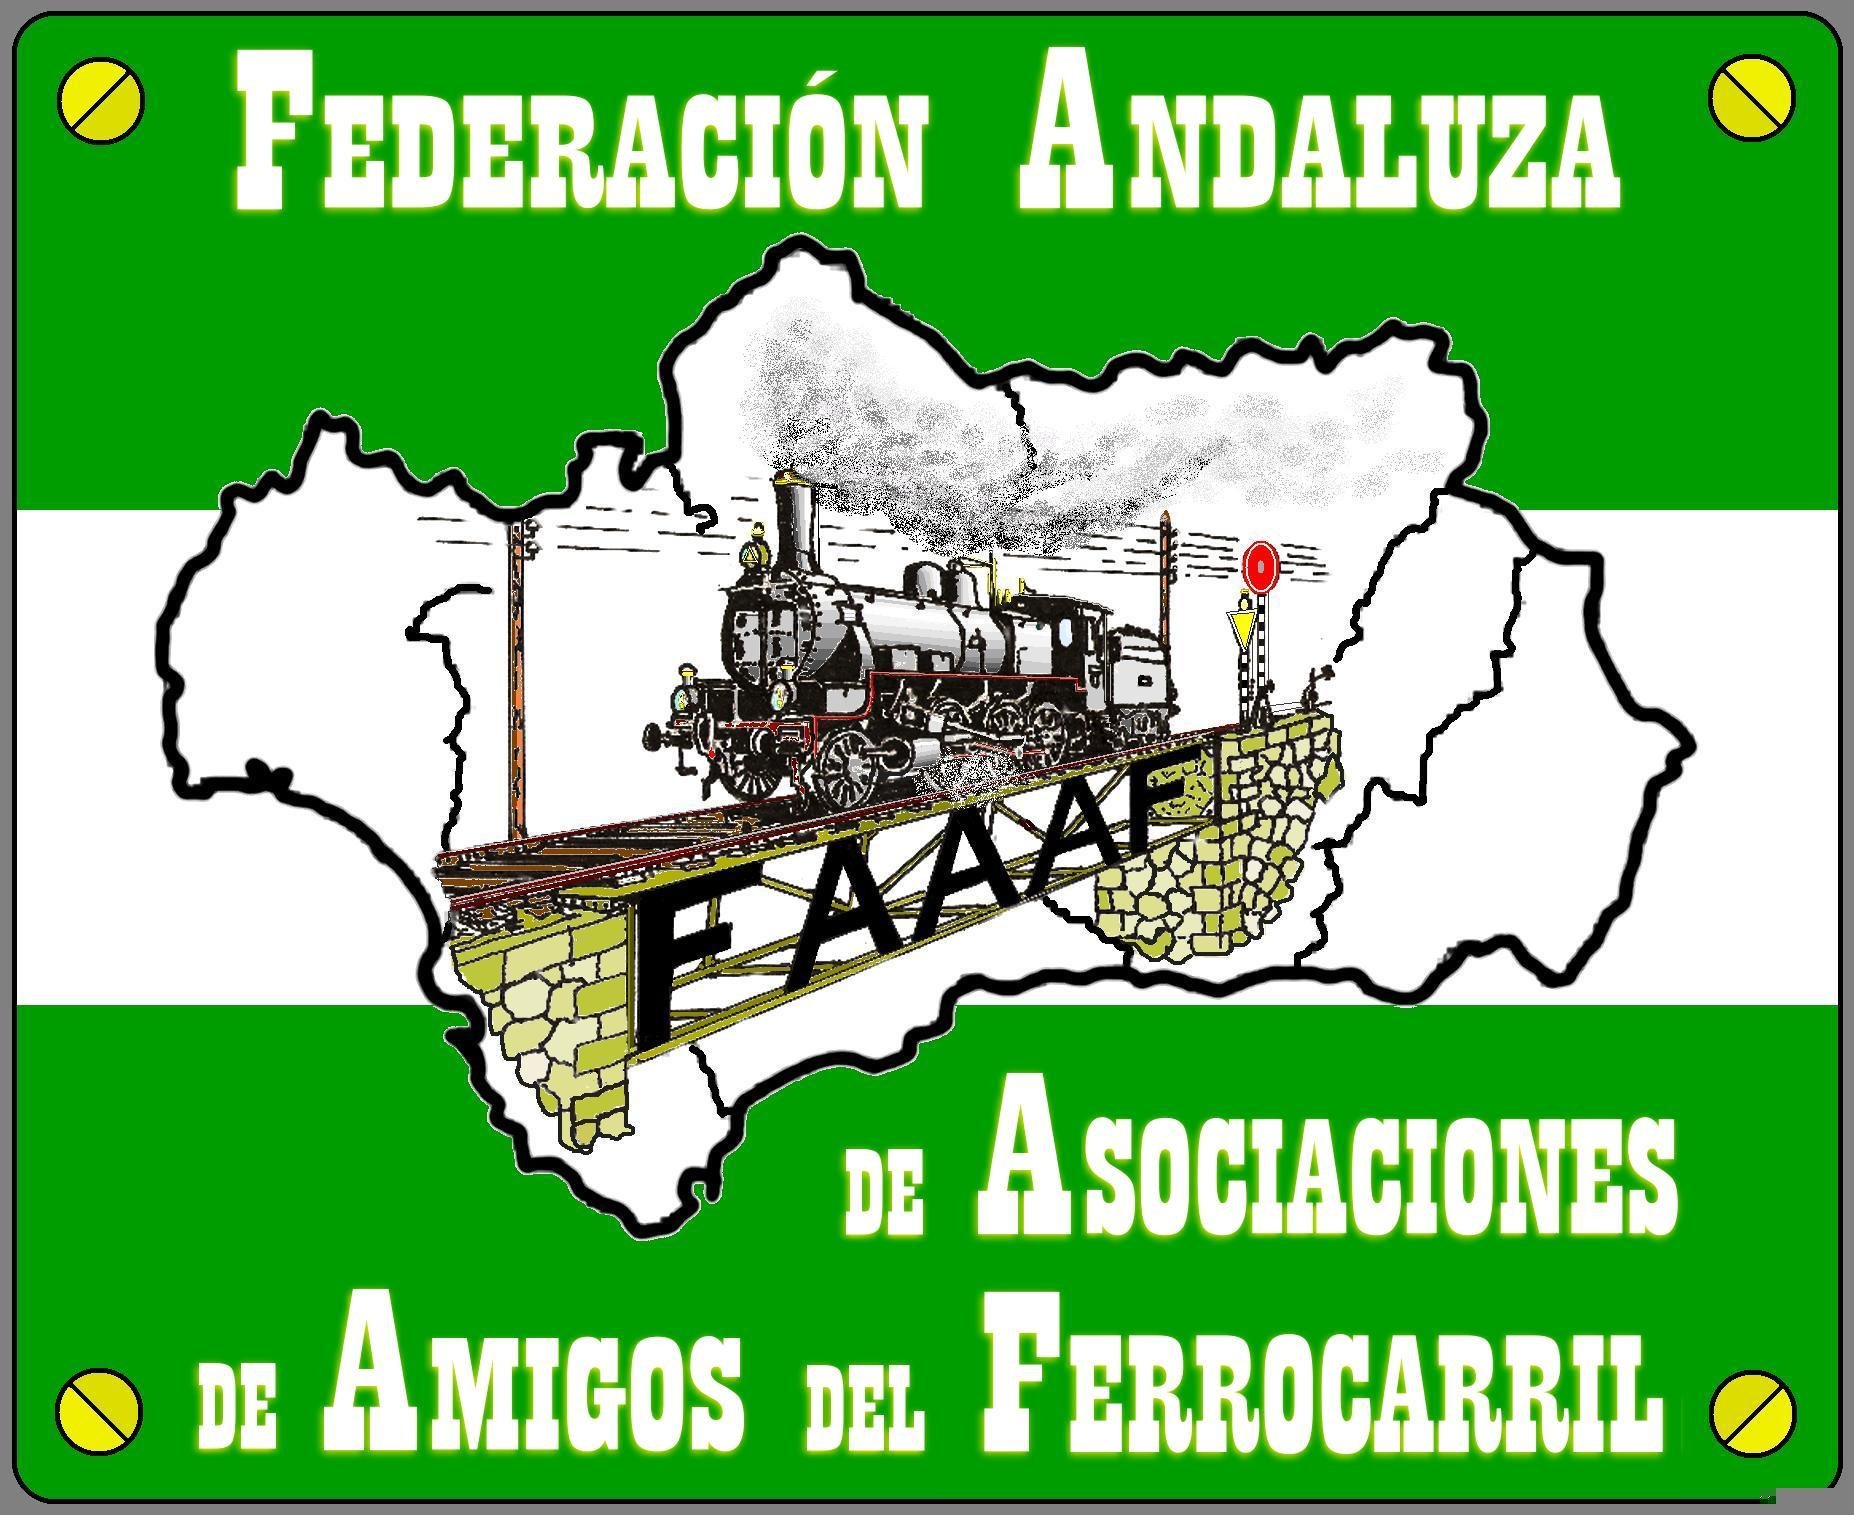 Asamblea General Federación Andaluza 2020